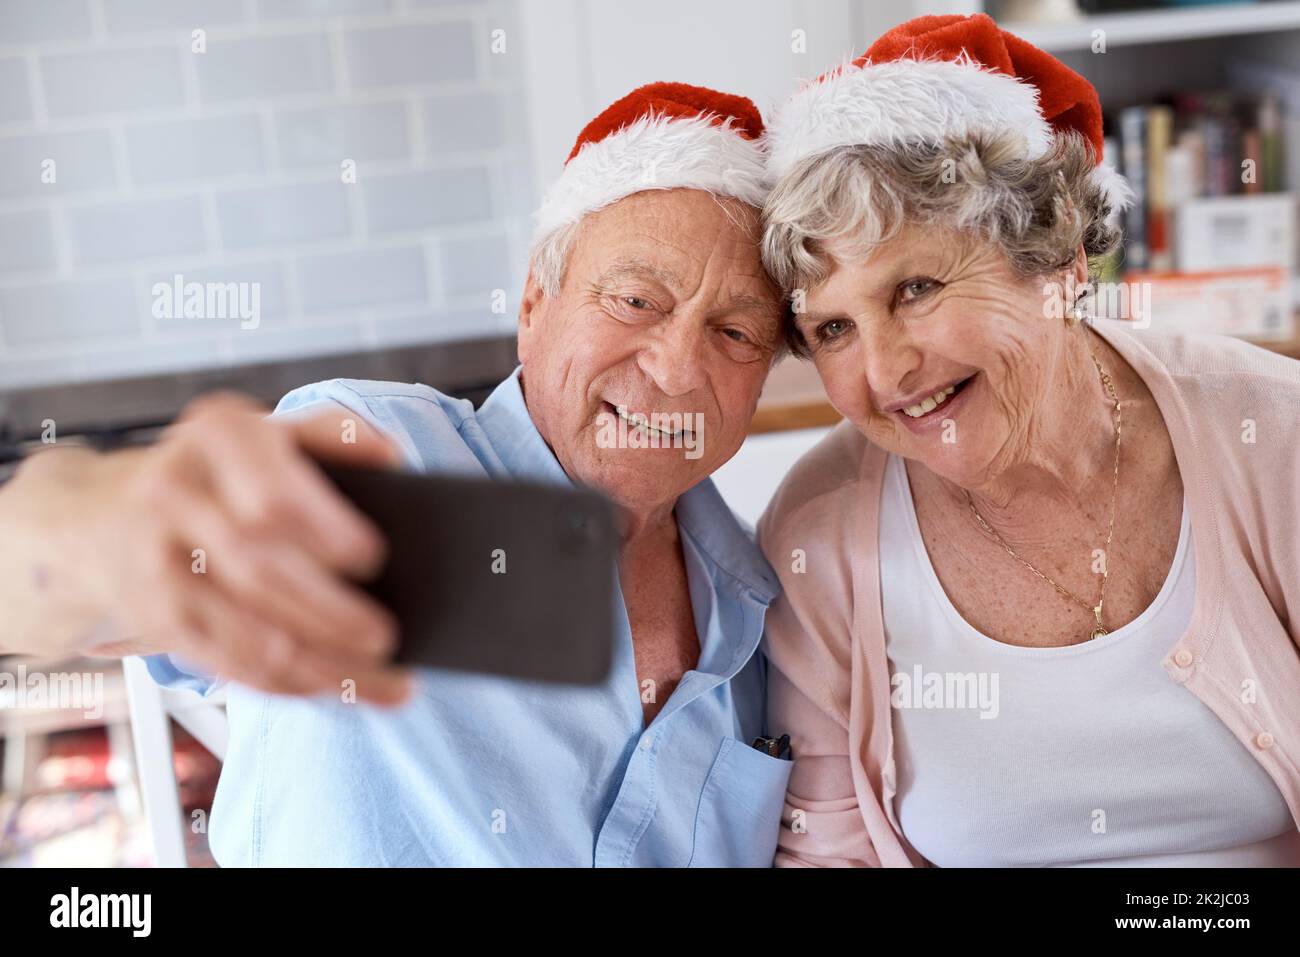 Nehmen Sie das Bild bereits auf. Aufnahme eines älteren Paares, das zu Hause ein festliches Selfie gemacht hat. Stockfoto